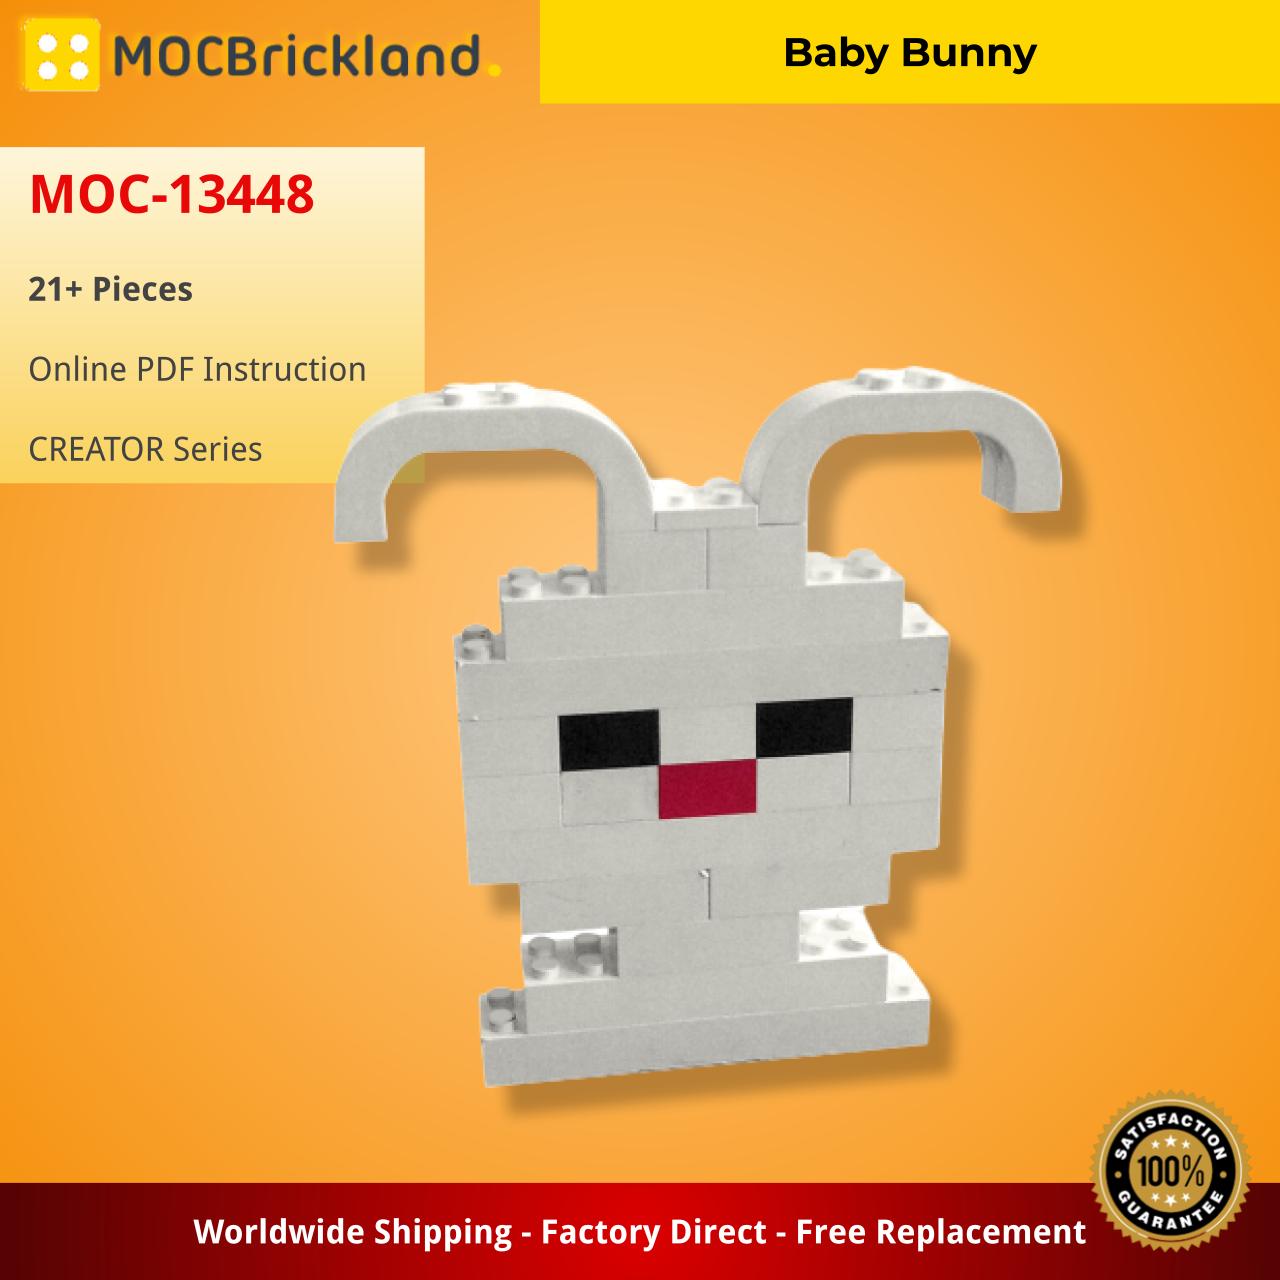 MOCBRICKLAND MOC-13448 Baby Bunny